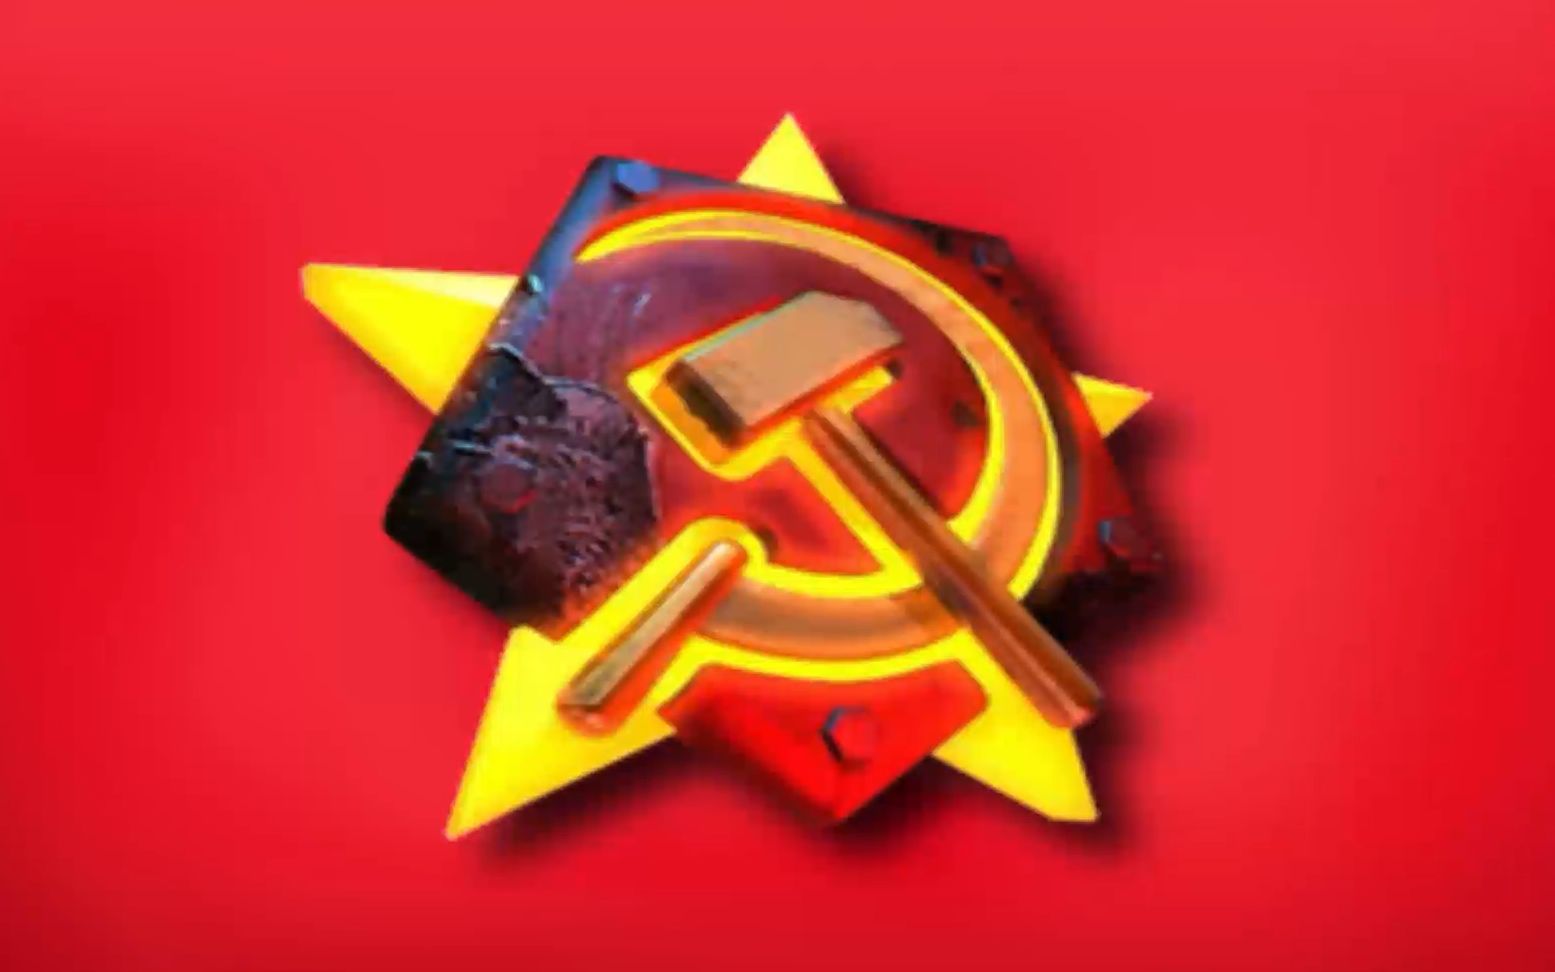 高清苏维埃壁纸图片